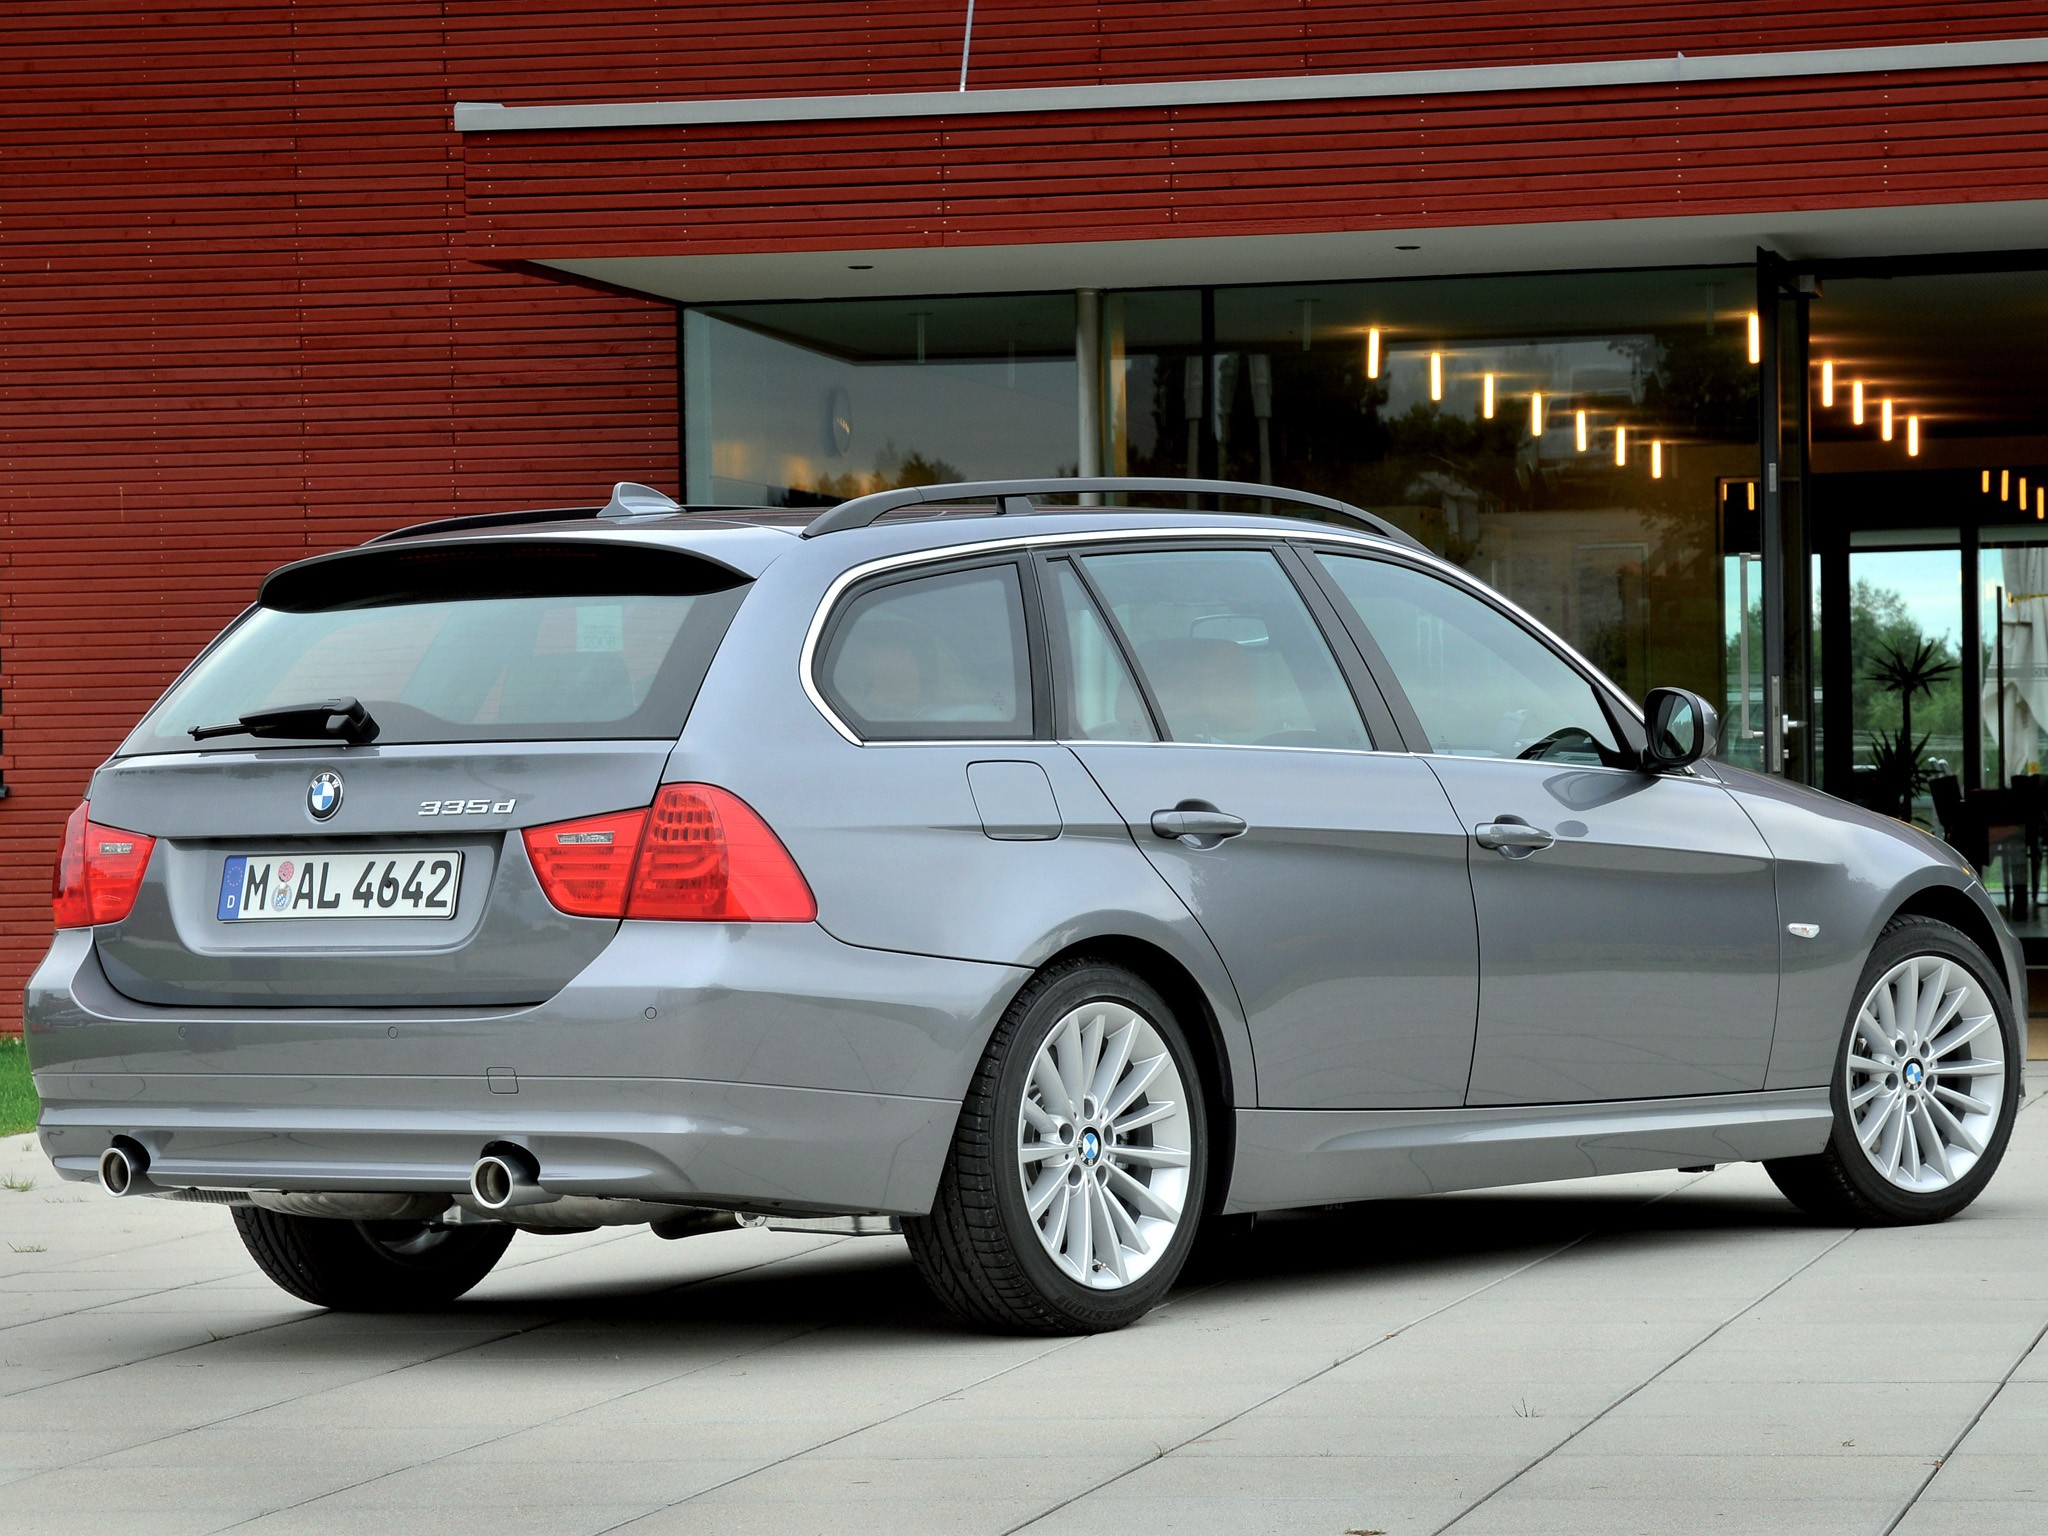 BMW 3 Series Touring (E91) 2008, 2009, 2010, 2011, 2012